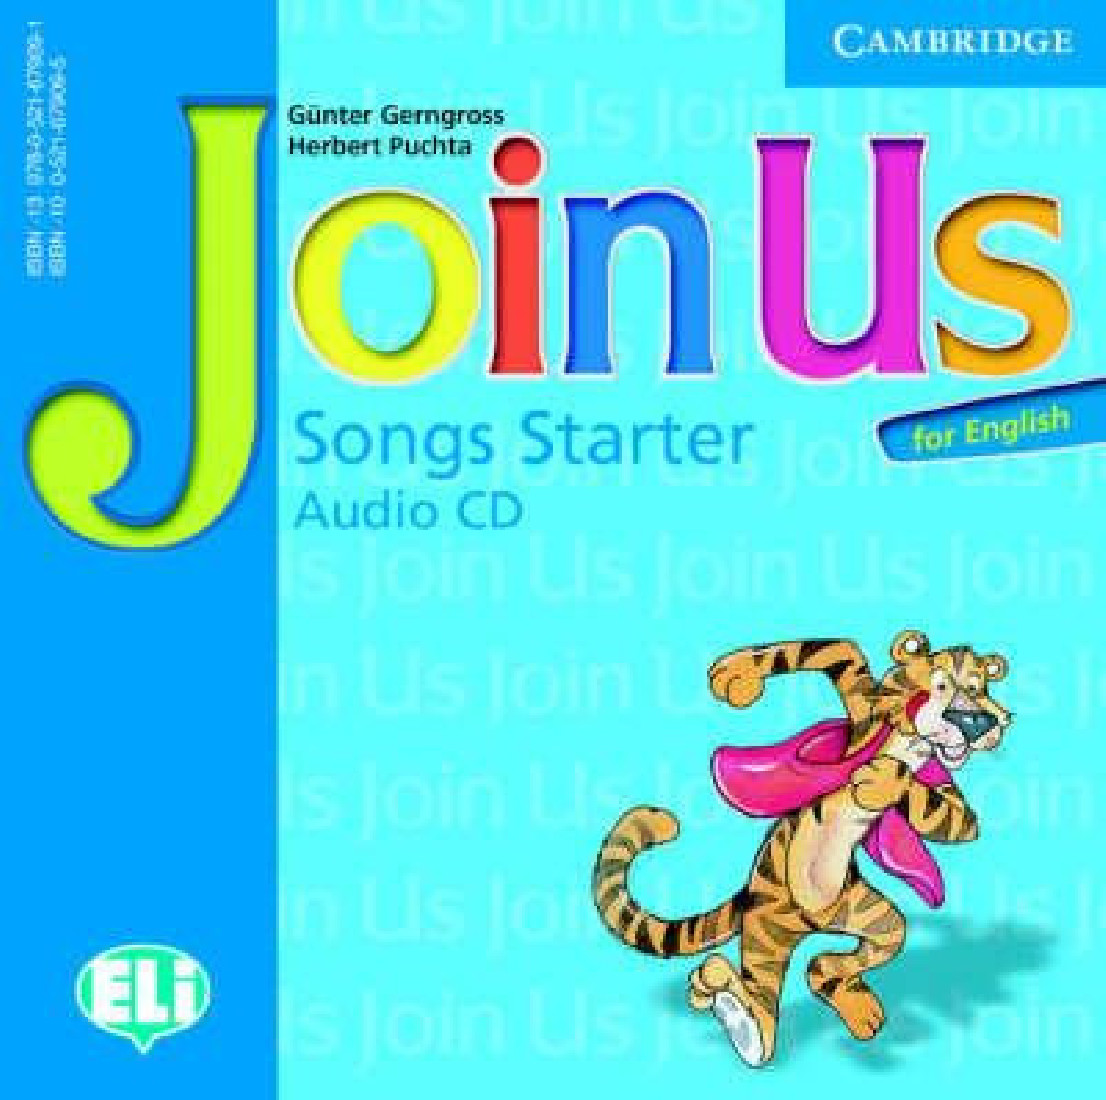 JOIN US STARTER SONGS CD